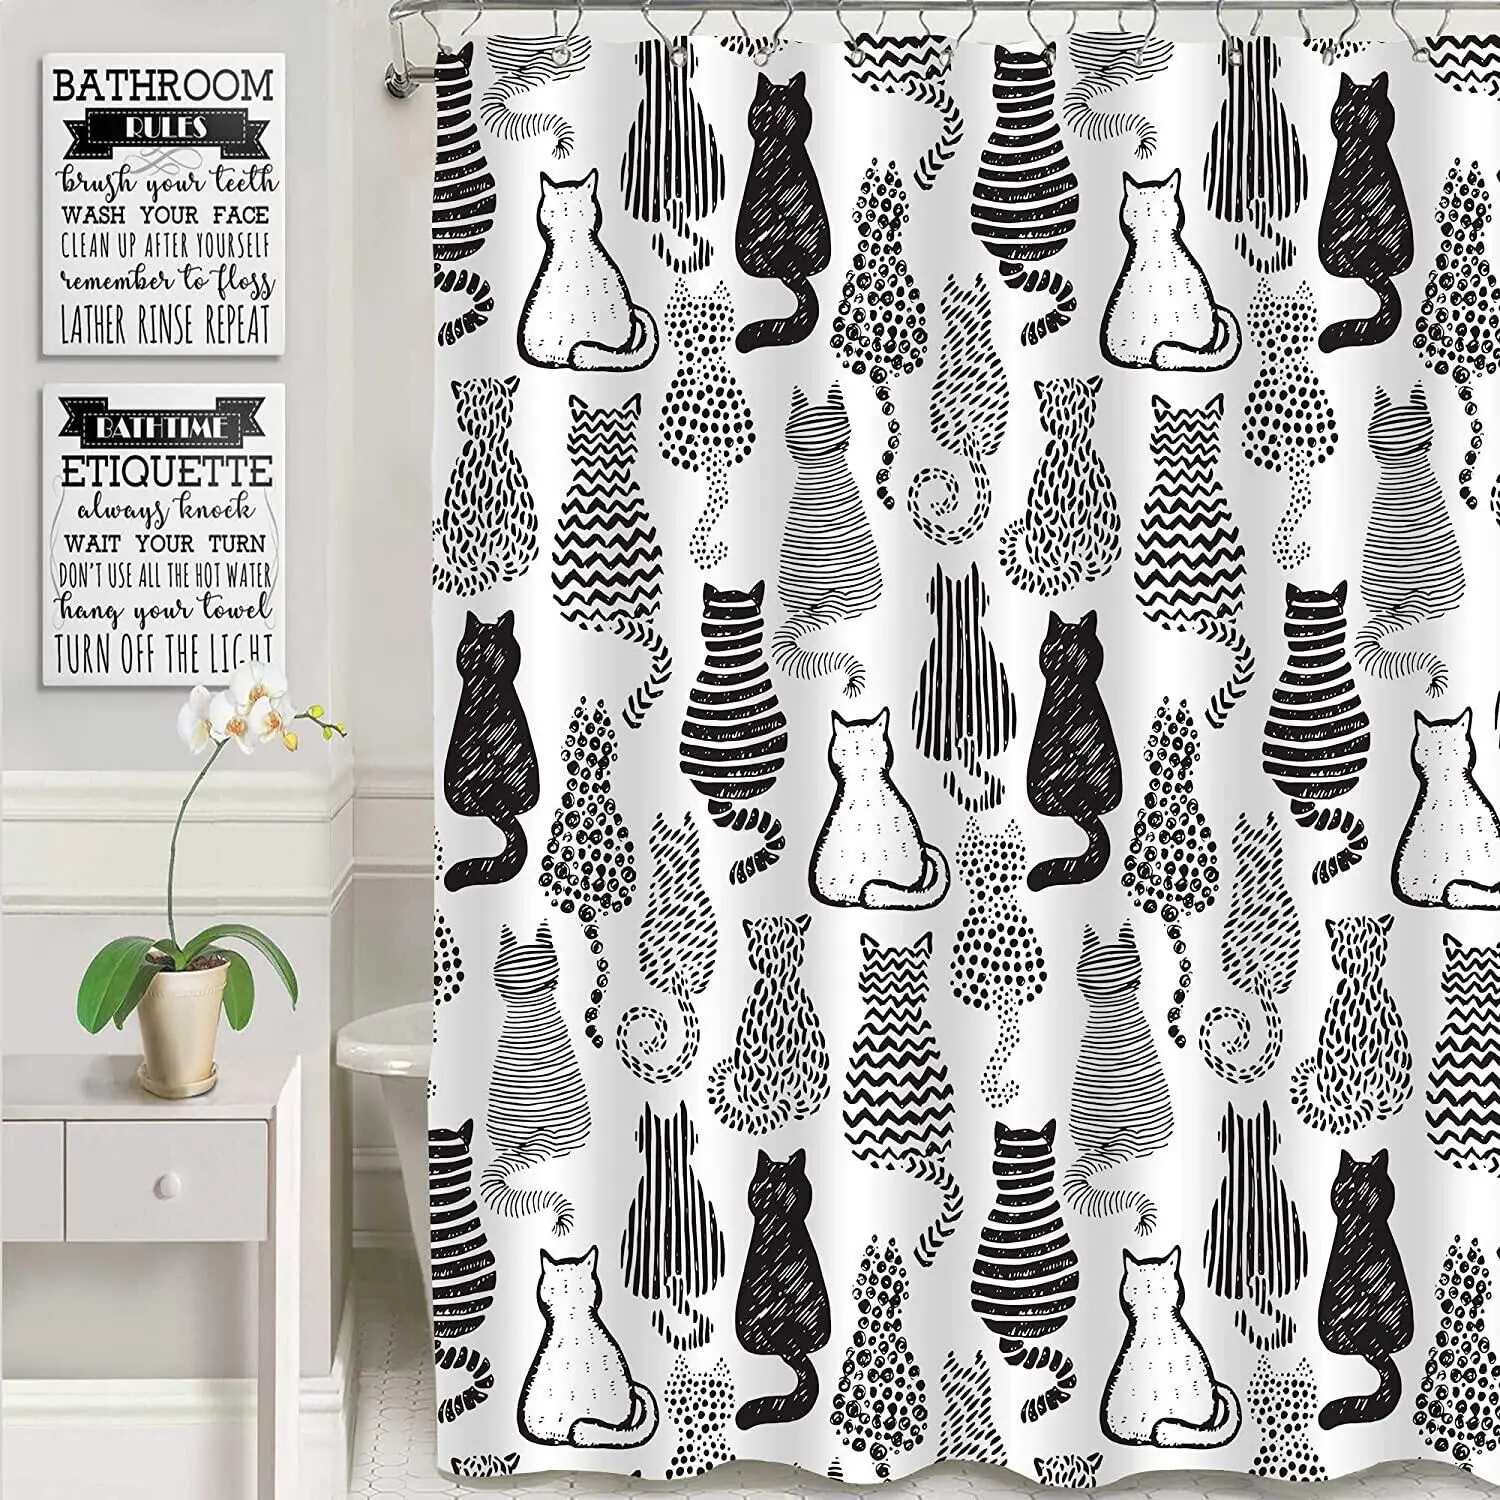 

Черно-белая занавеска для душа в виде кошки, набор с милым абстрактным котенком, подарки женщинам и девочкам, тканевая занавеска для ванной комнаты, декор для ванной комнаты